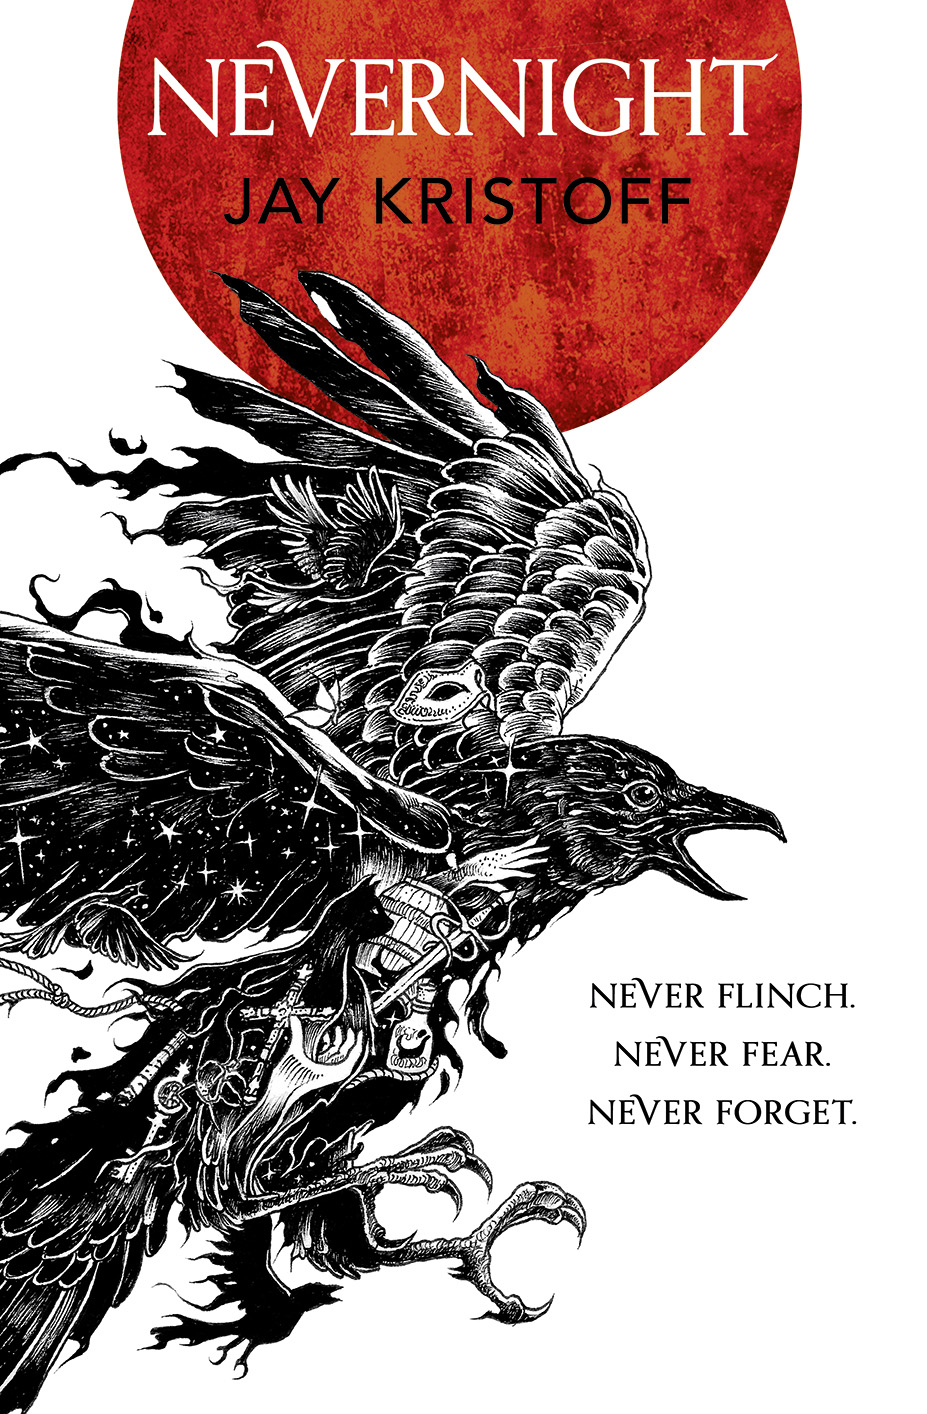 Nevernight book cover